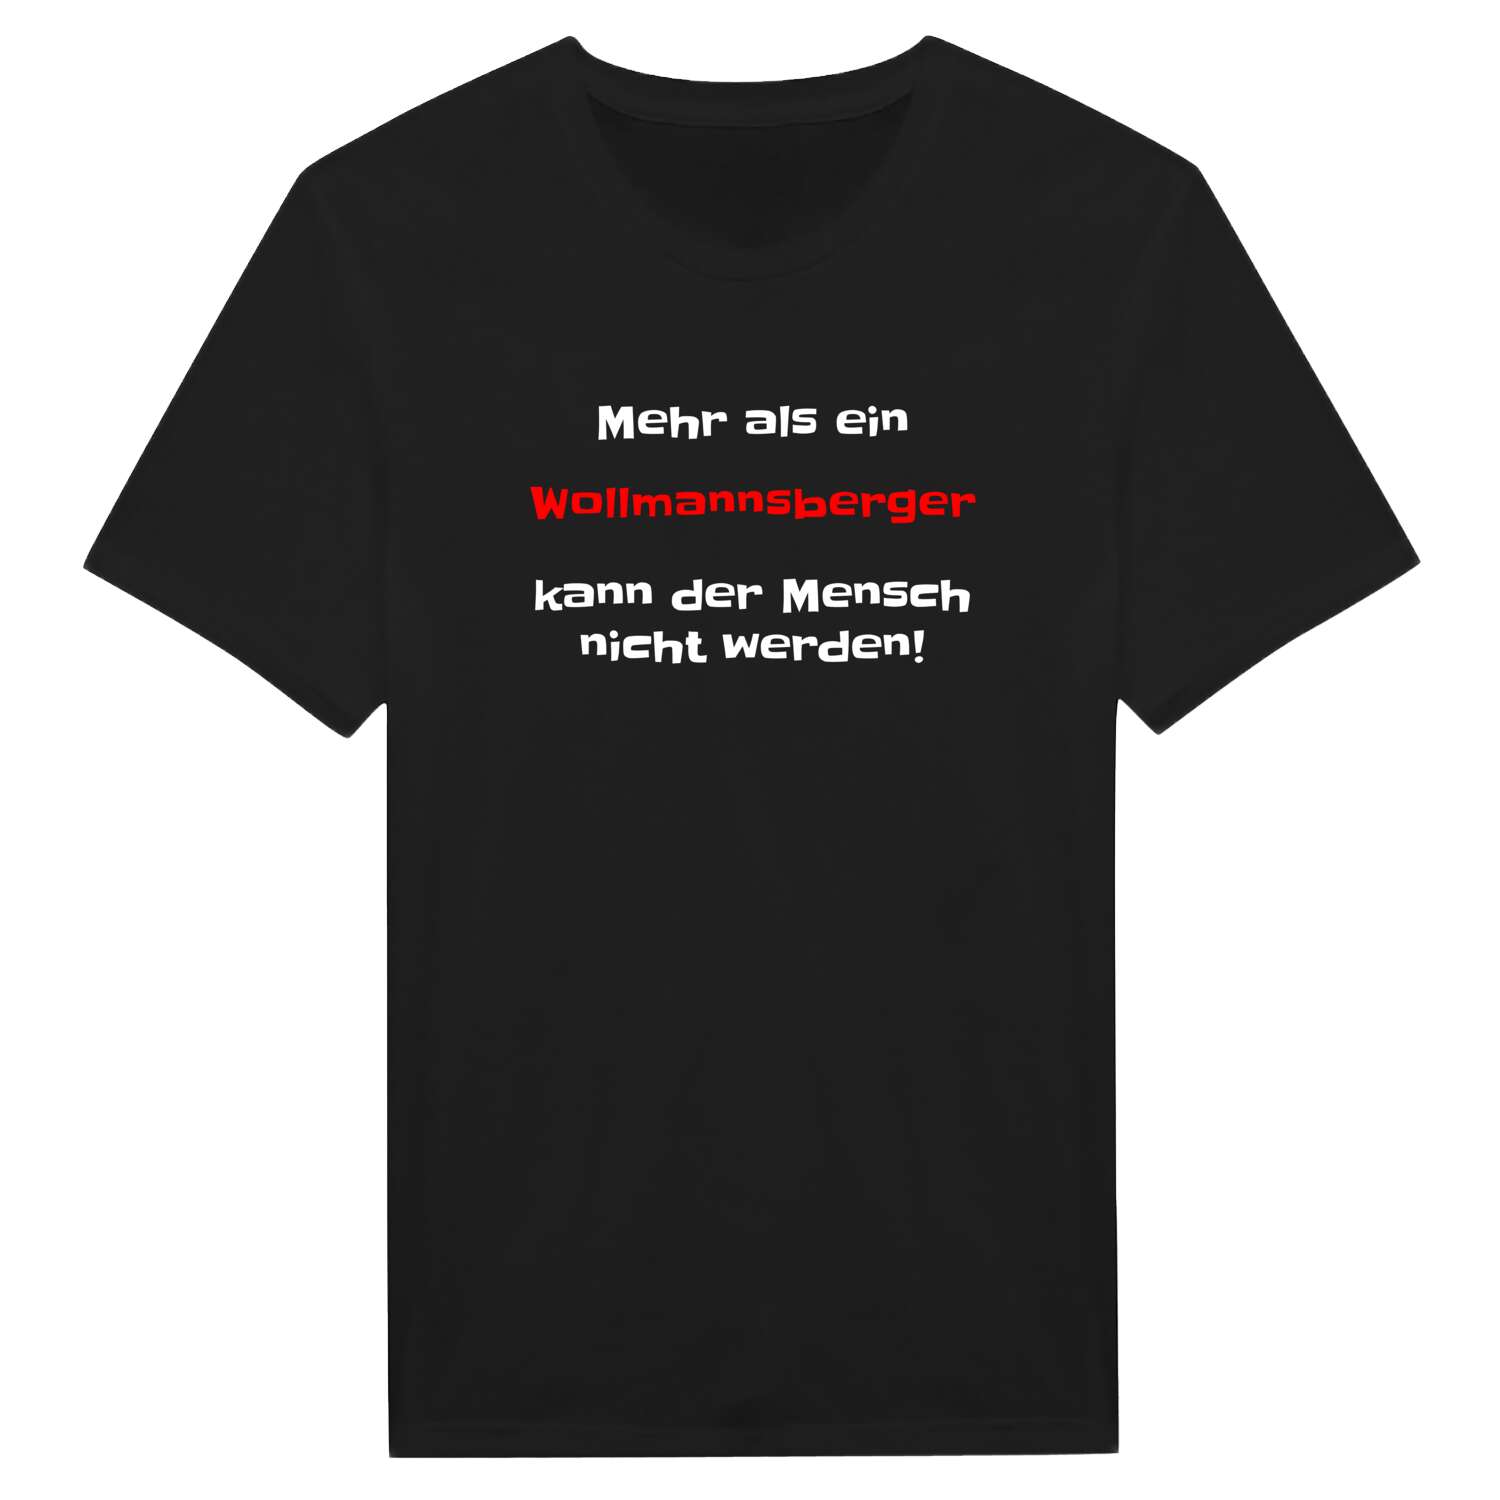 Wollmannsberg T-Shirt »Mehr als ein«